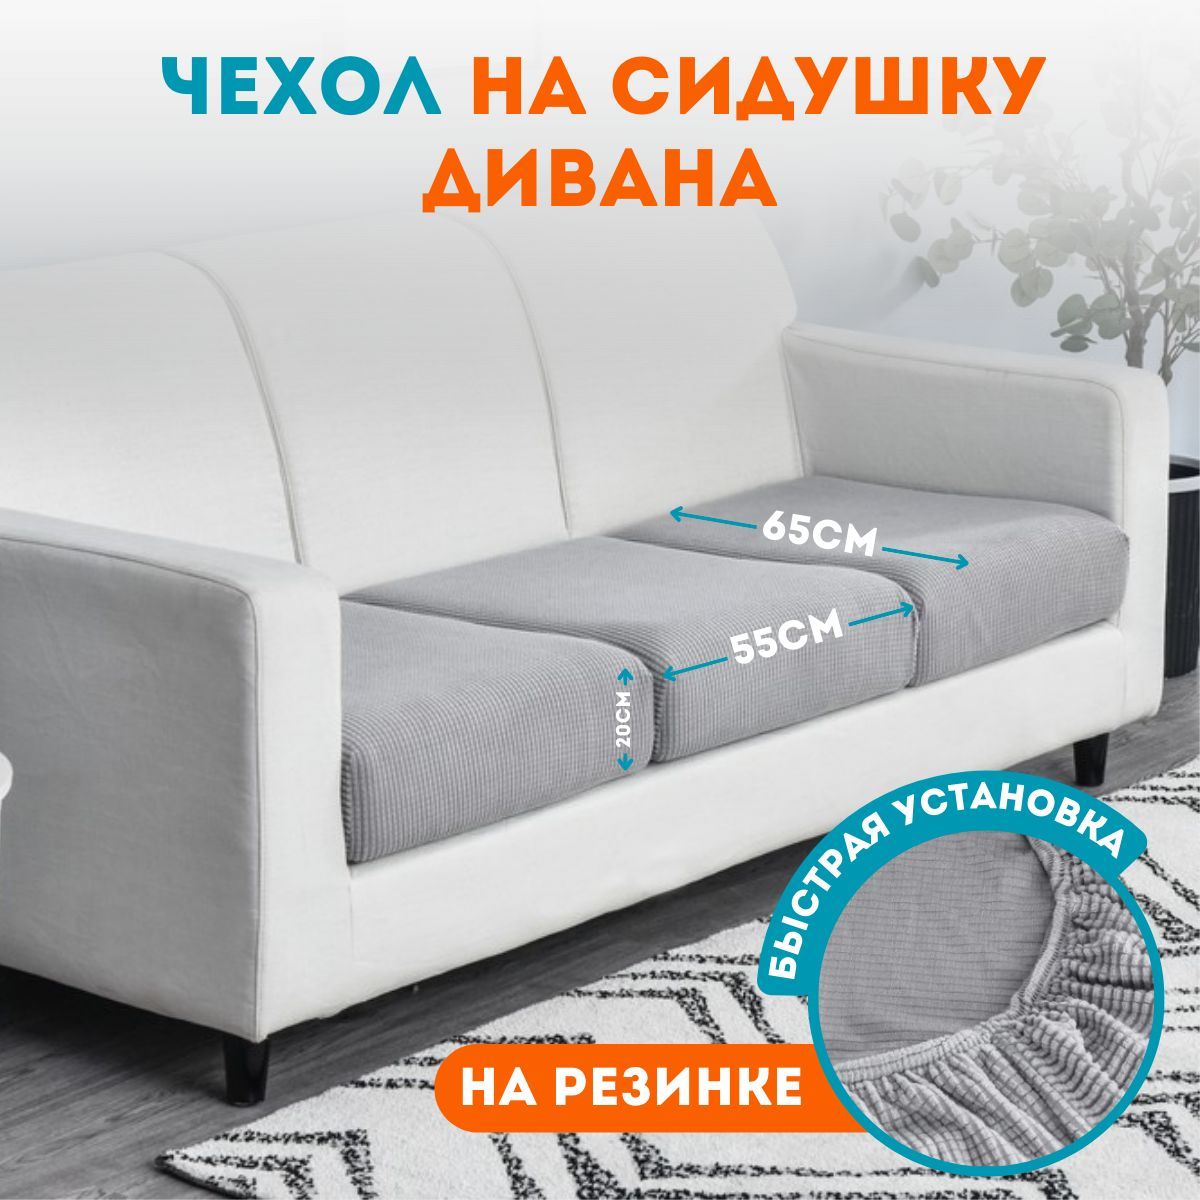 Съемные чехлы на мебель irhidey.ruополь | ВКонтакте